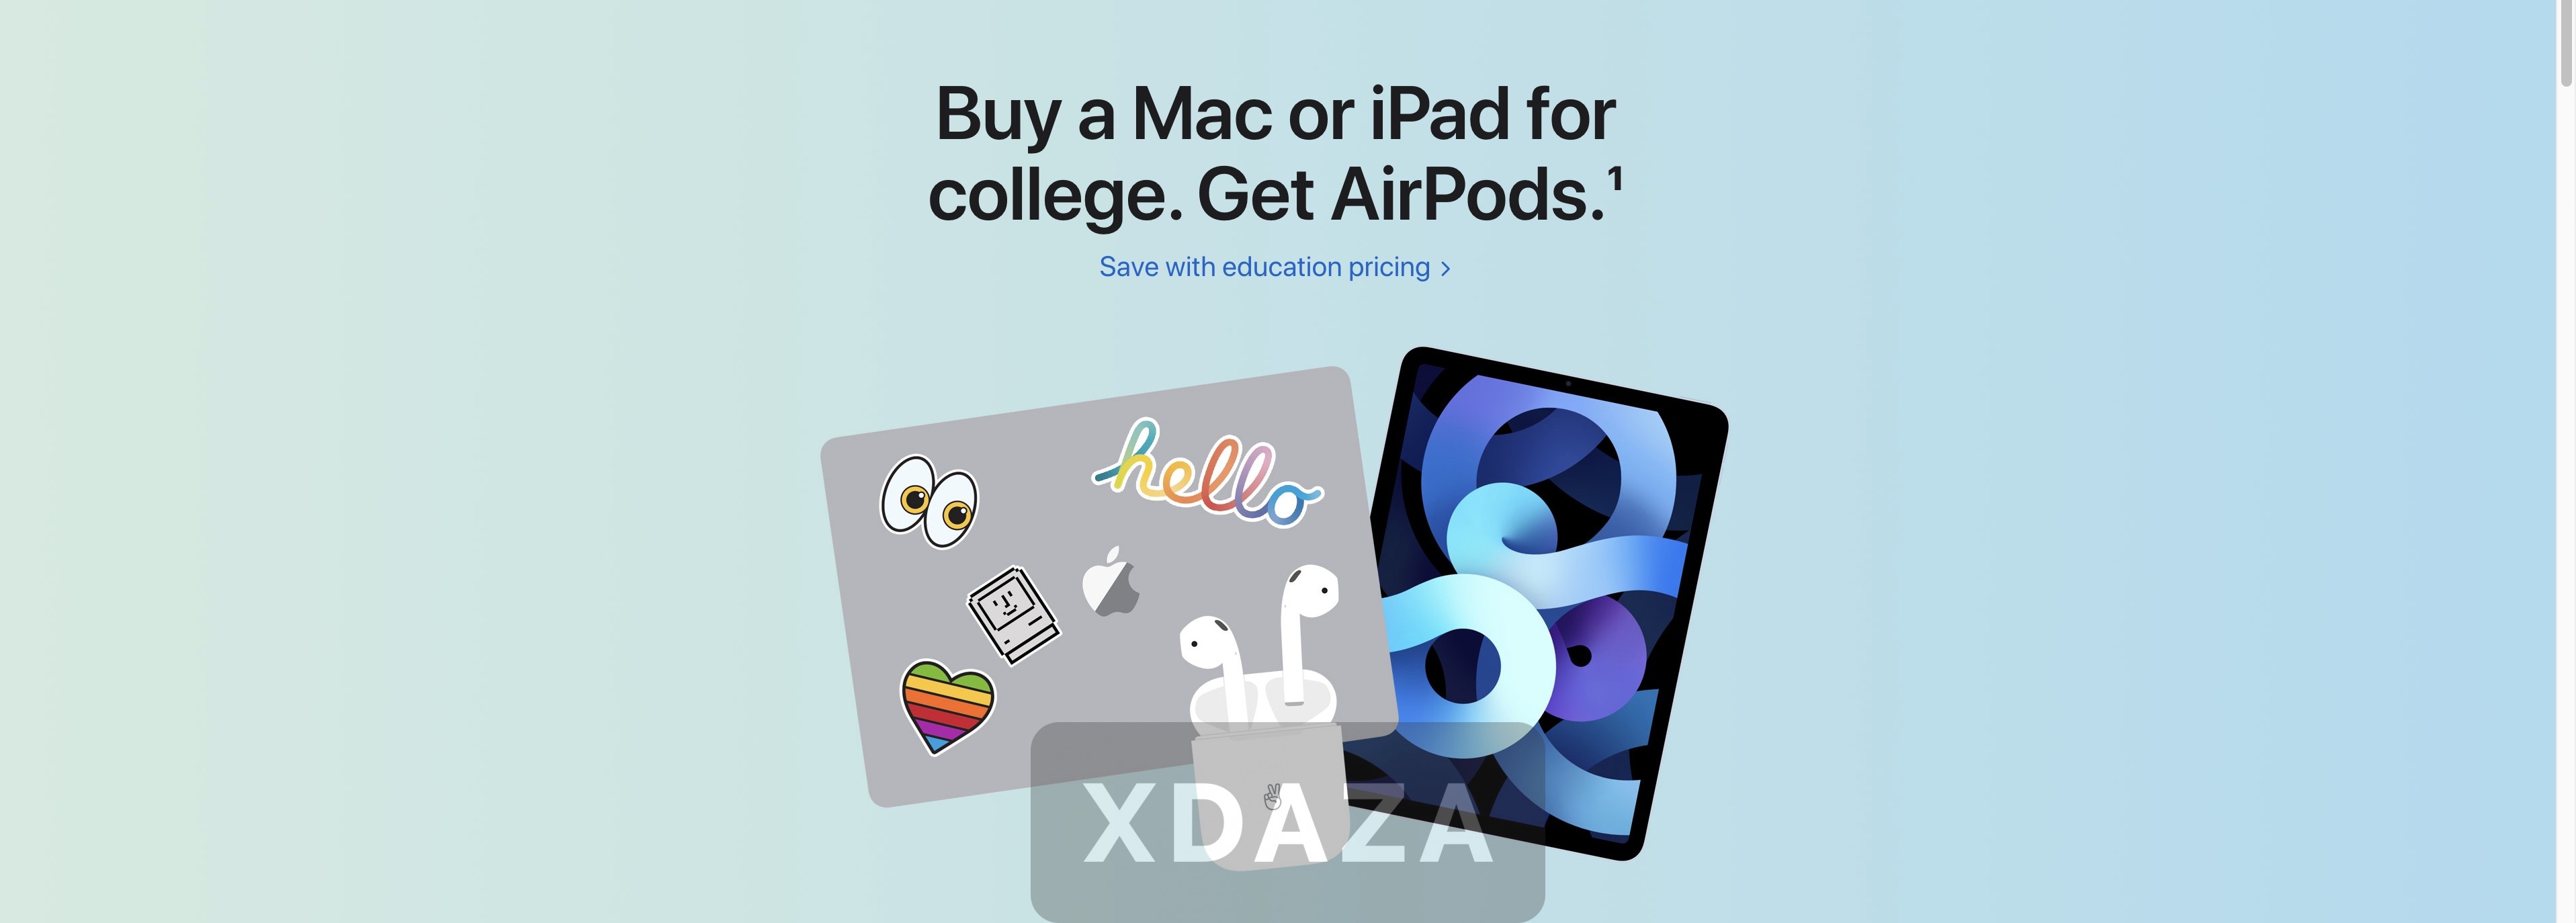 苹果2021年教育优惠政策确认！购买Mac和iPad均可获免费获得AirPods2代